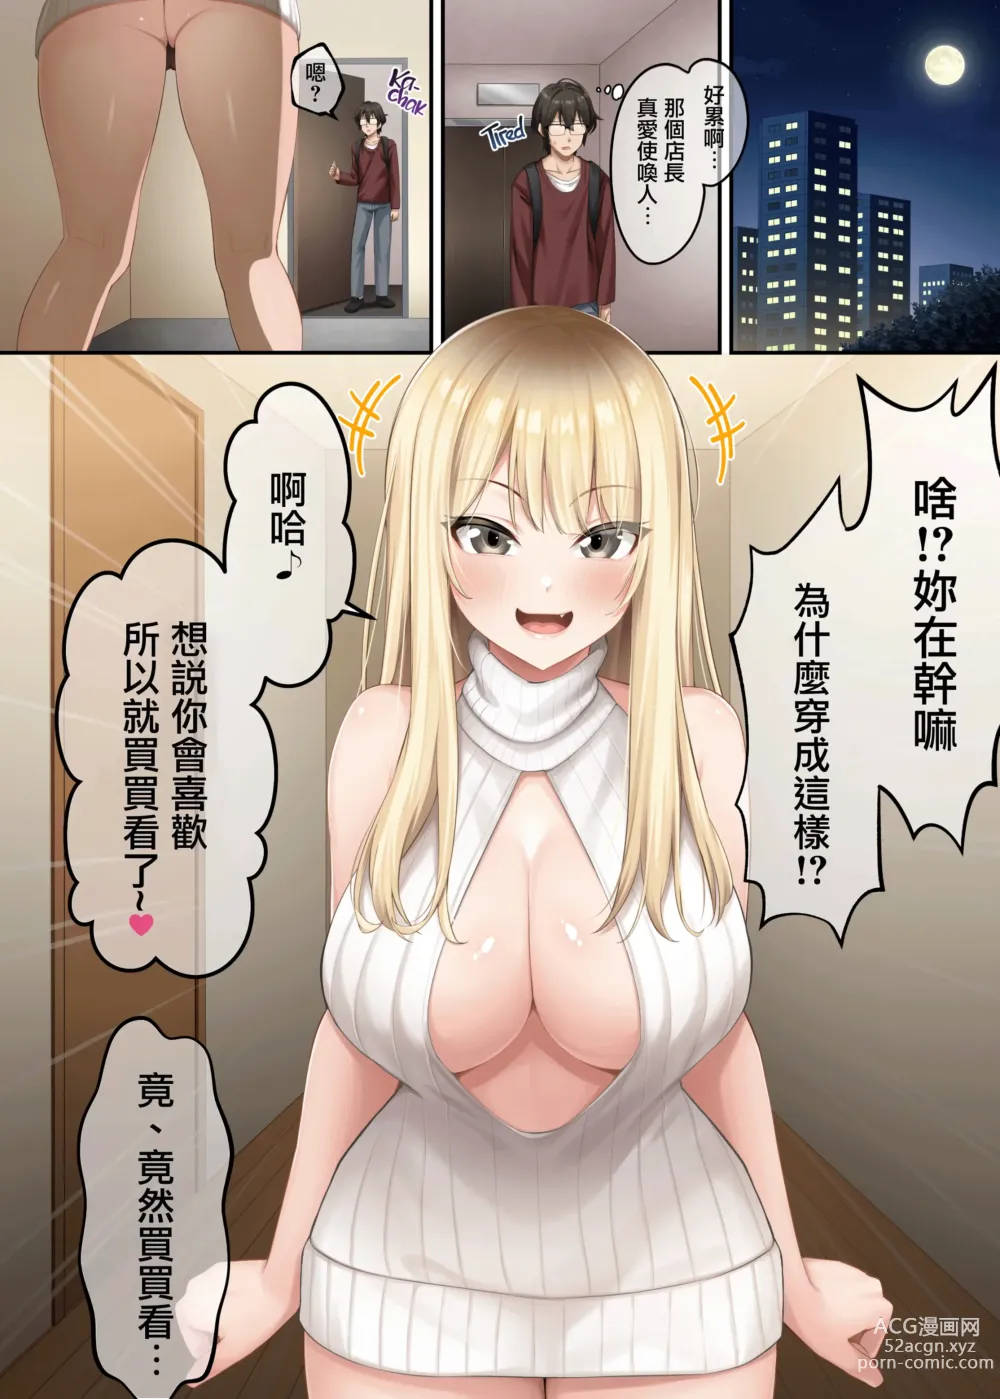 Page 7 of doujinshi 家庭教師として居候したはずが、エロいギャル達とセックスばかりしています。2